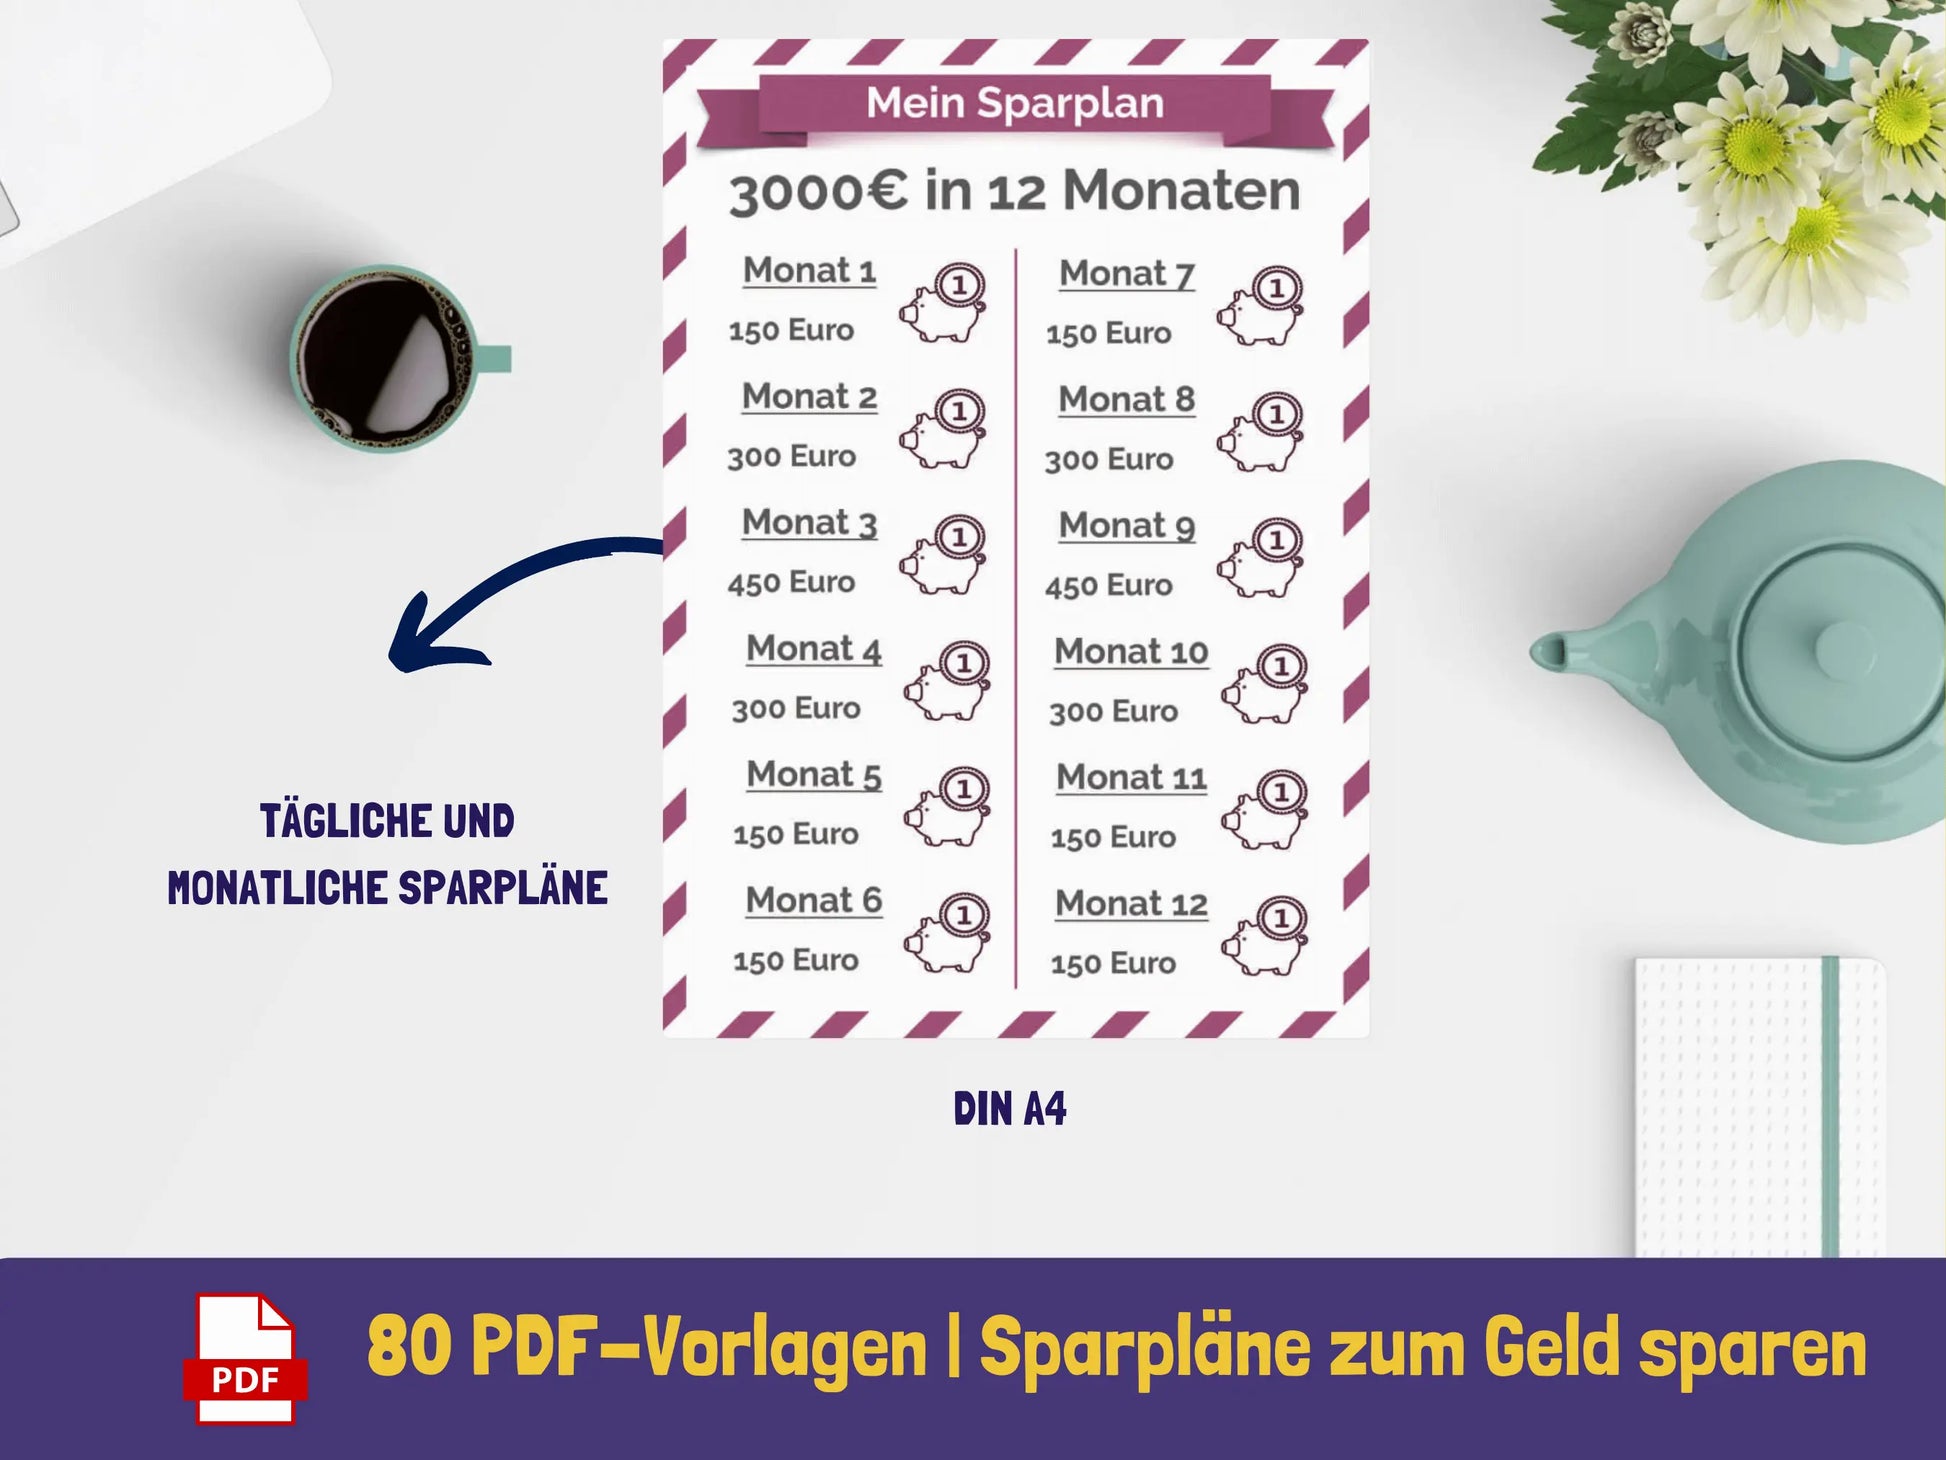 64+ Sparpläne (Sonderpreis) PDF AndreasJansen Vorlage